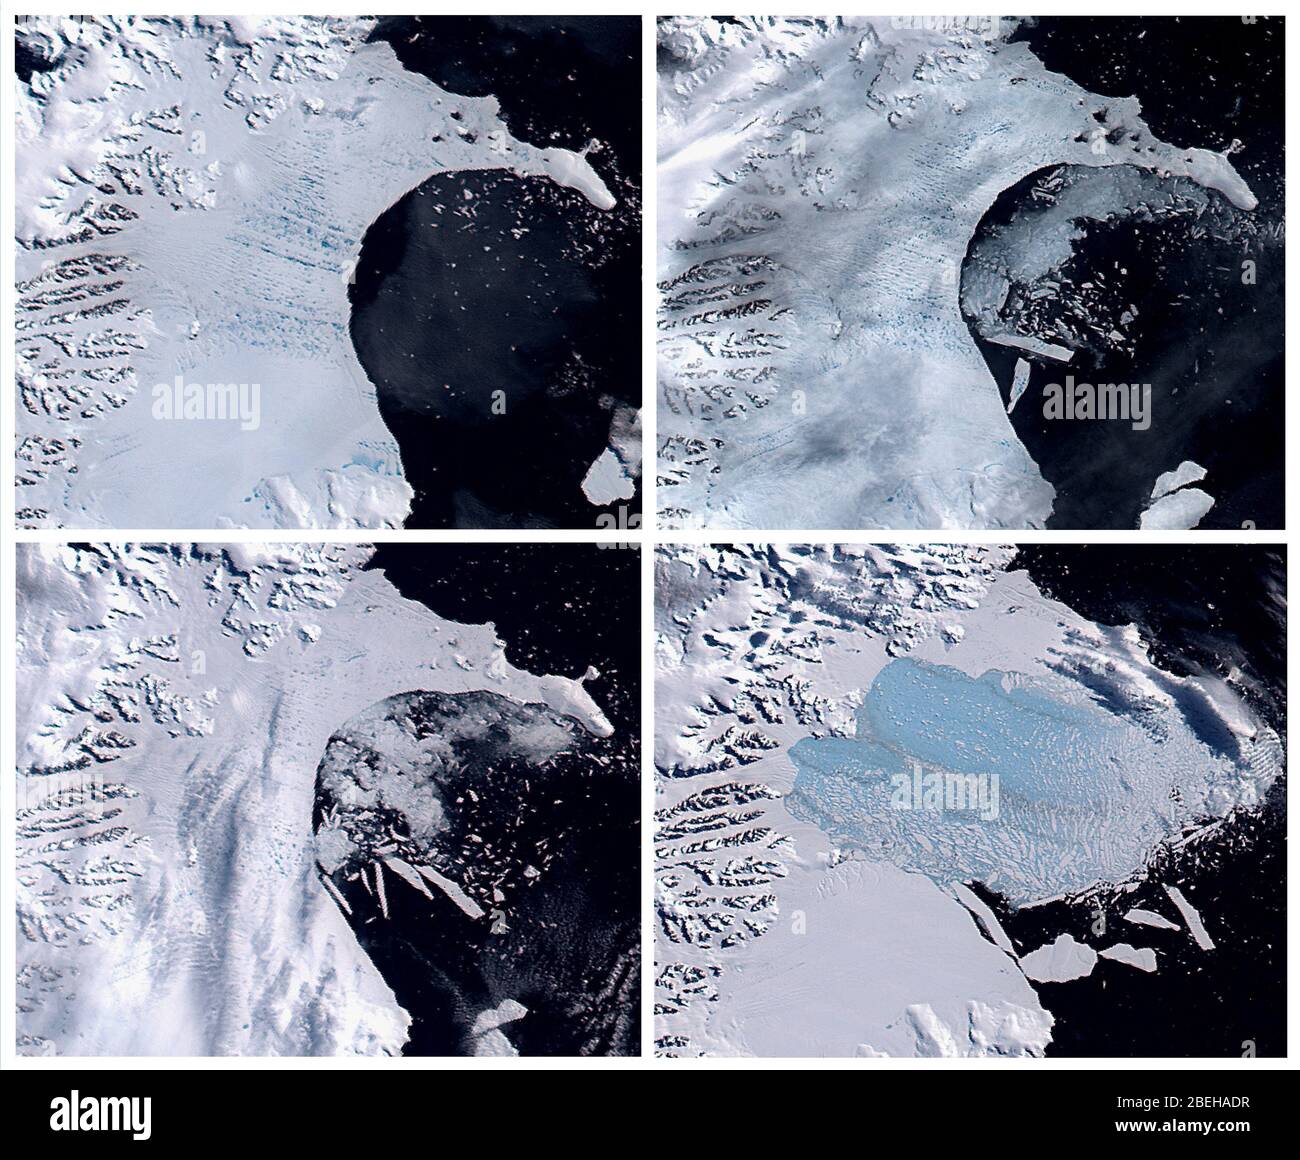 La première des cinq véritables images couleur de la clayette à glace Larsen B de l'Antarctique s'est effondrée en janvier, février et mars 2002, comme l'a enregistré le capteur satellite MODIS de la NASA. La première image, à partir du 31 janvier, montre le rayon de fin d'été austral avec des étangs de fonte bleuâtre foncé qui dépotent sa surface. Banque D'Images